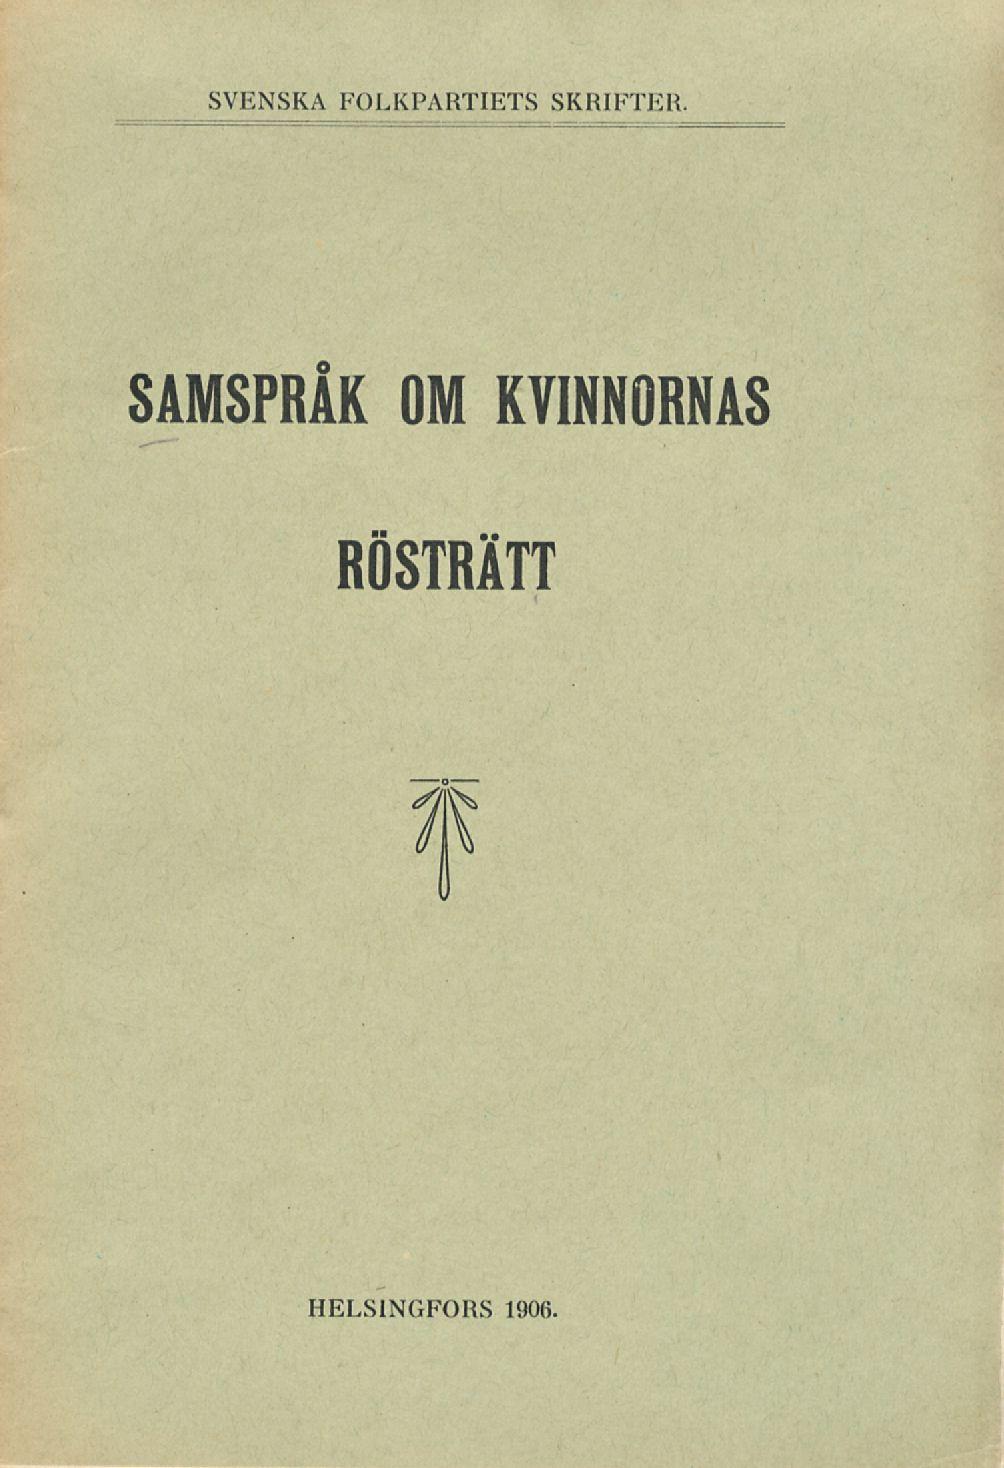 Svenska folkpartiets skrifter SAMSPRÅK